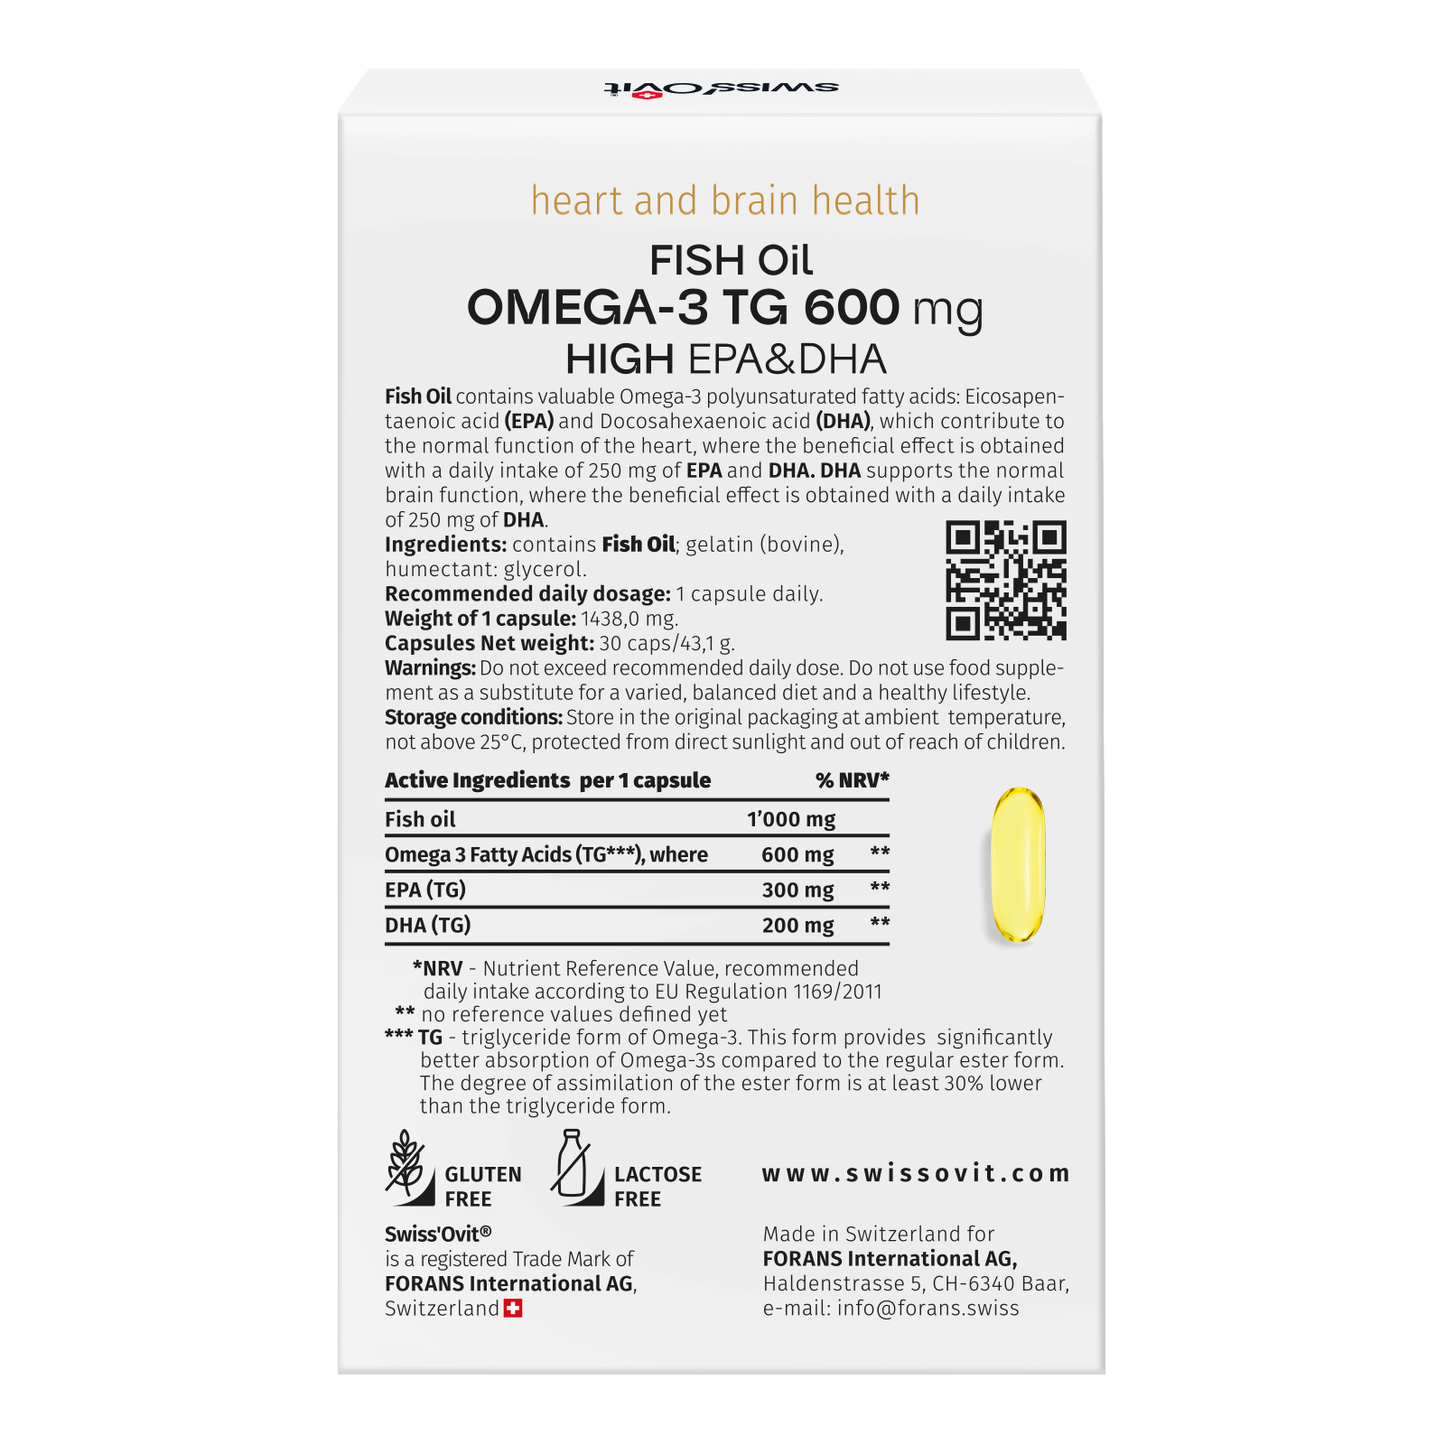 OMEGA-3 TG 600 mg Fischöl